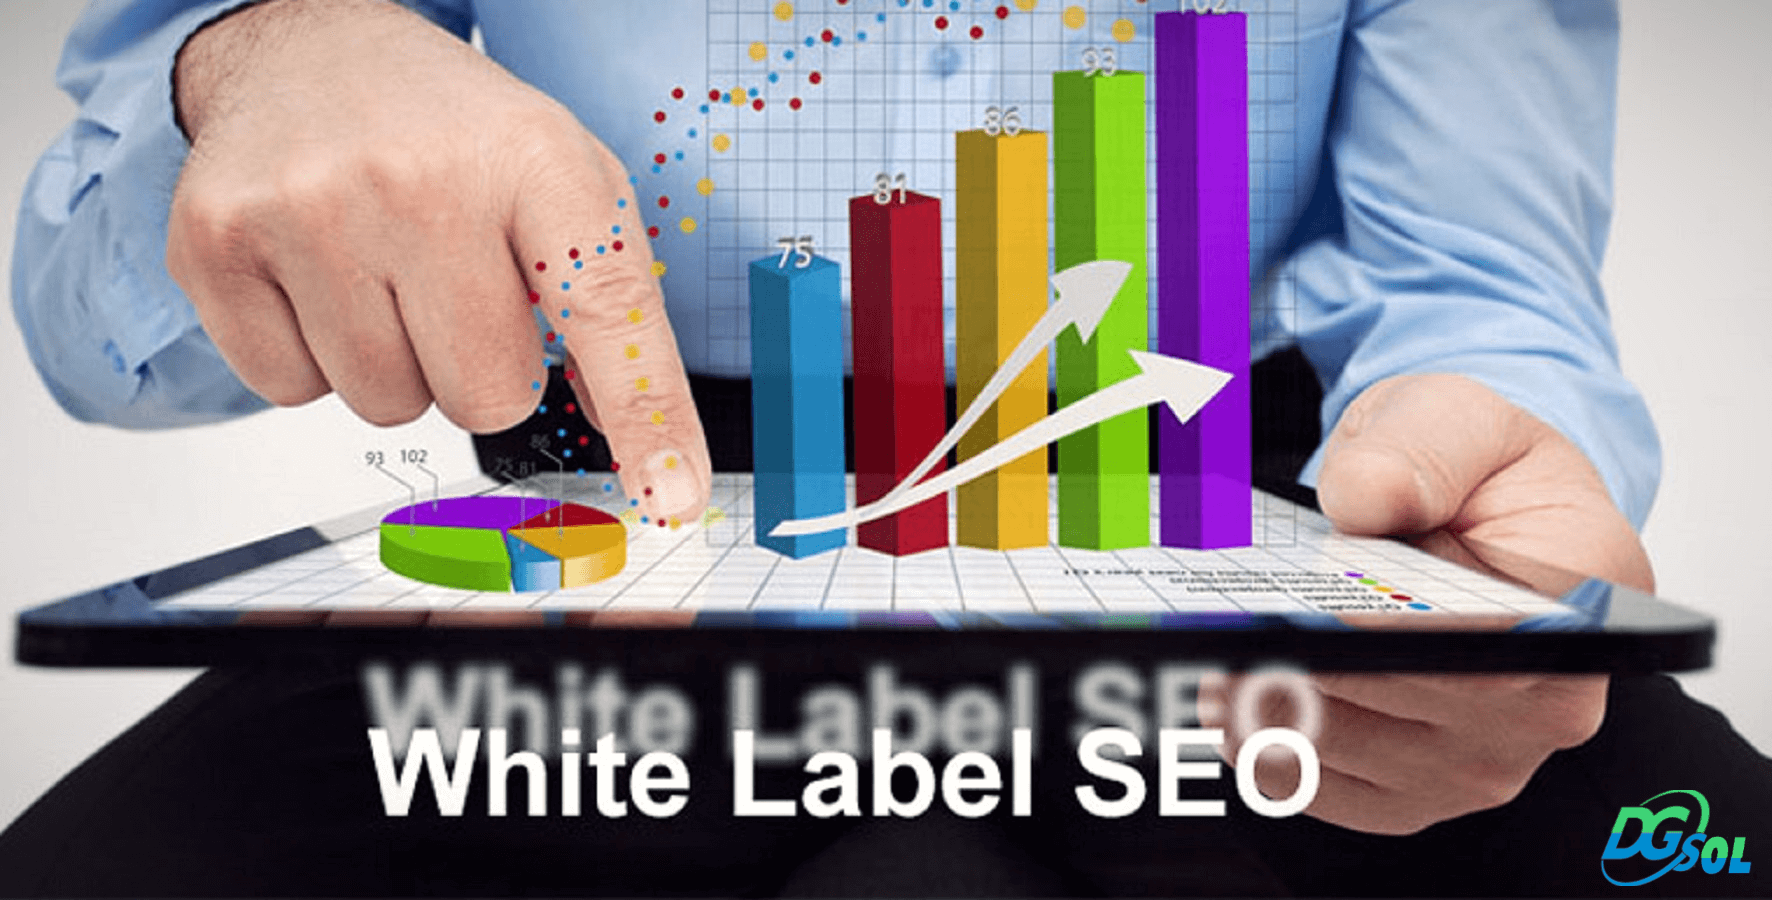 White Label SEO Services Provider